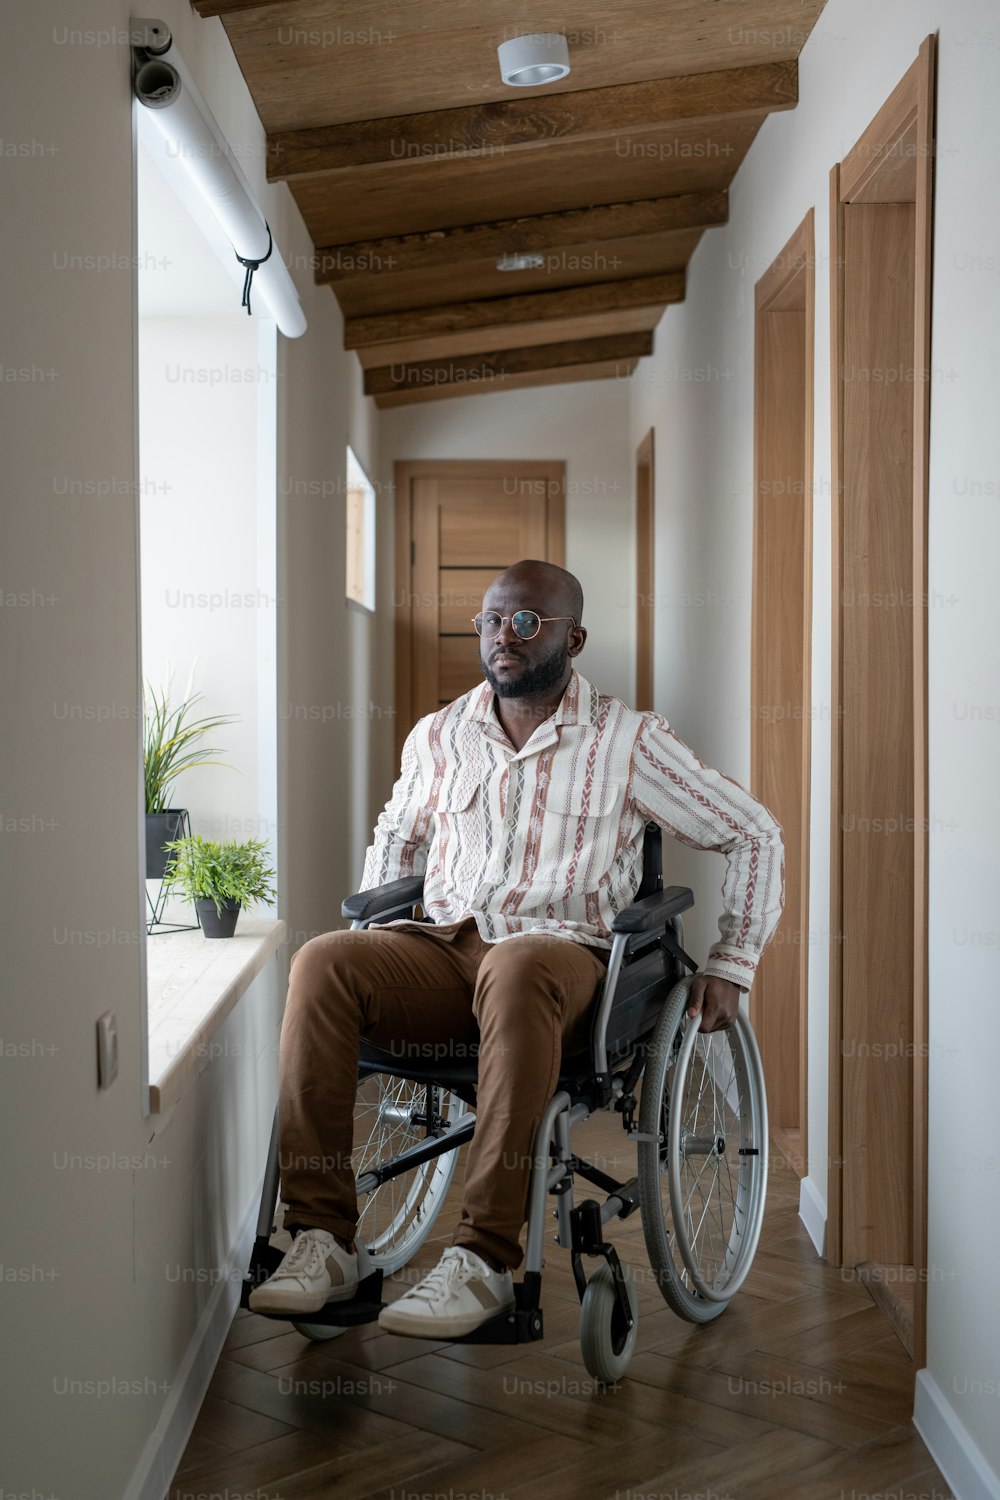 大きな近代的なアパートの長い廊下で車椅子に座り、カメラを見ている障害のあるアフリカ系アメリカ人の男性